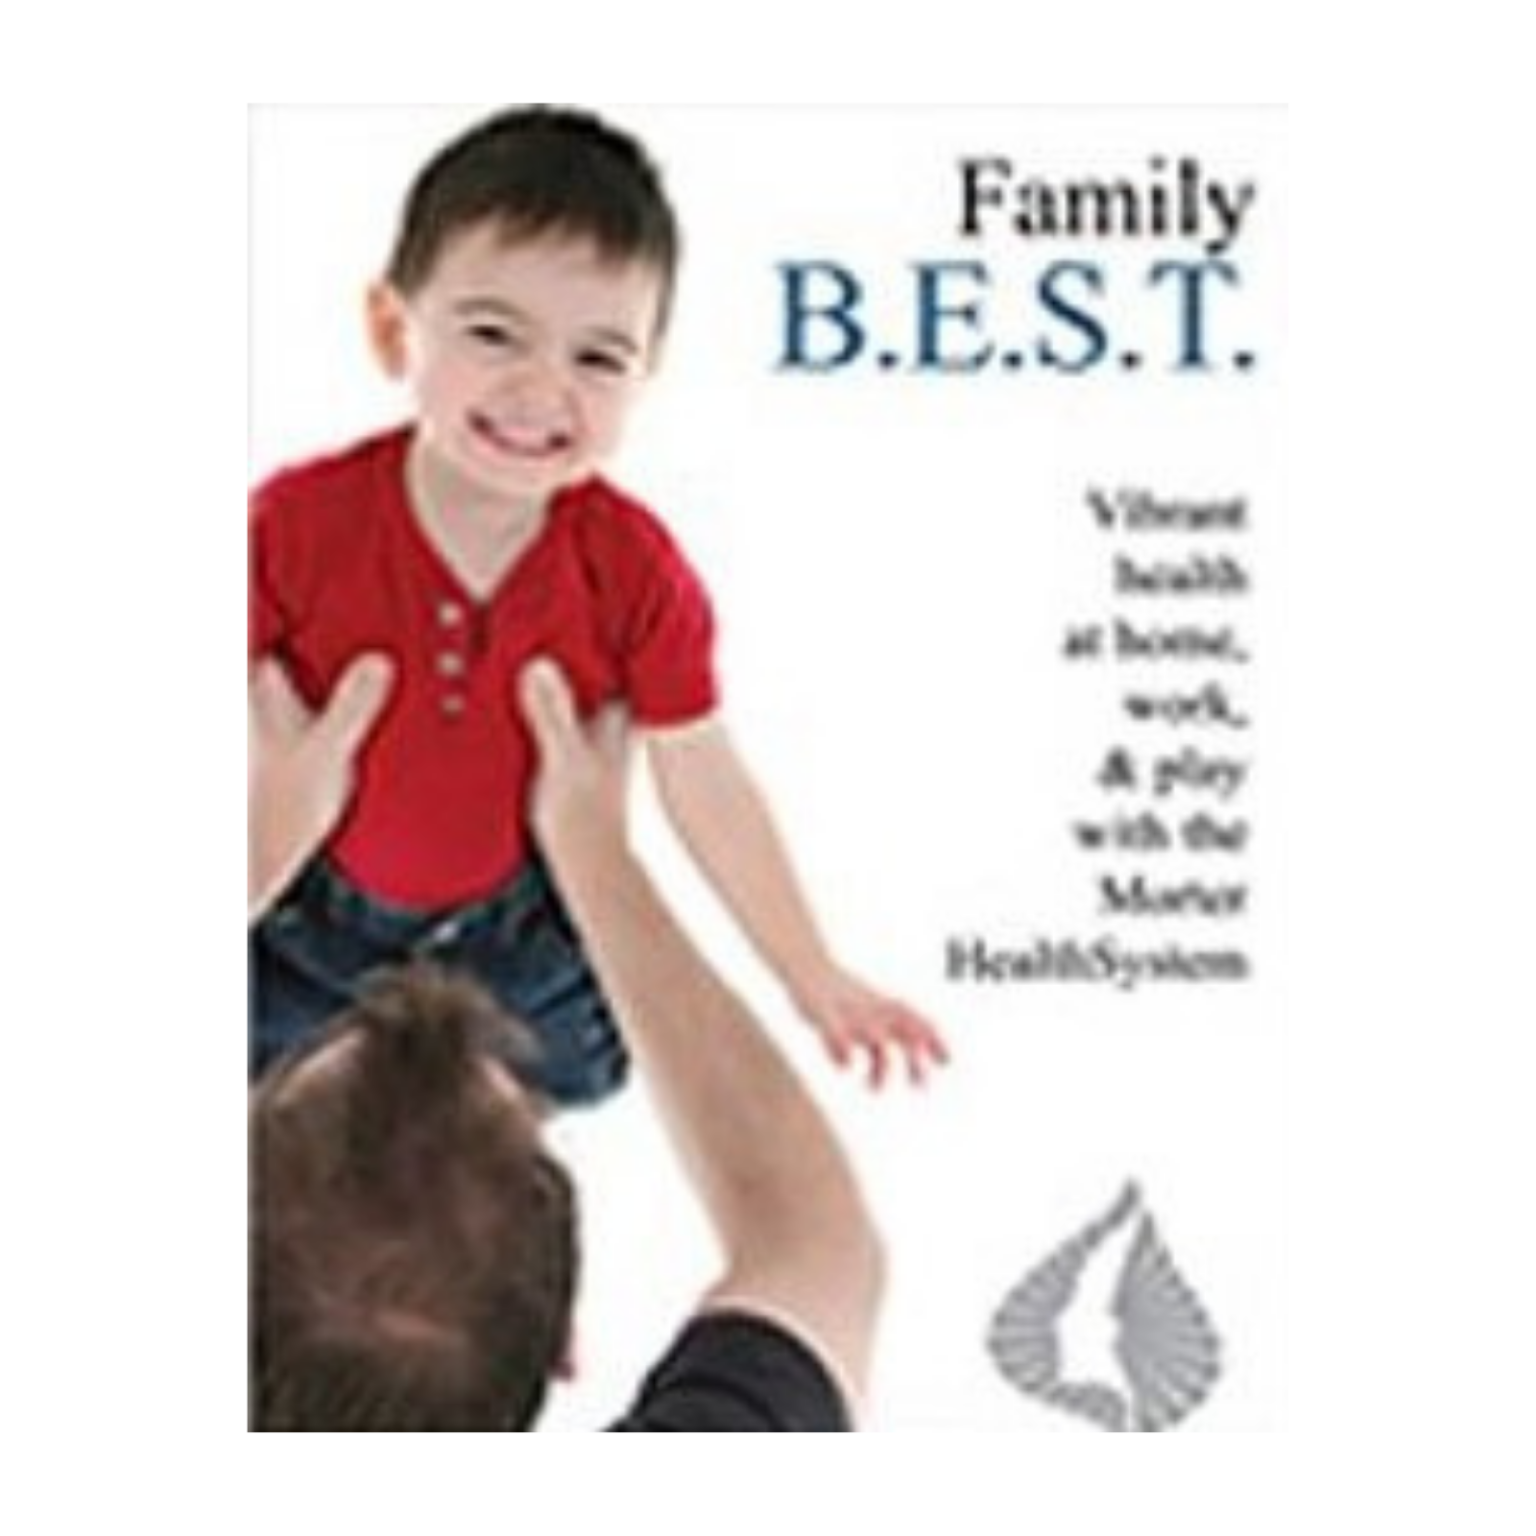 family-b-e-s-t-homestudy-program-kit-morter-healthsystem